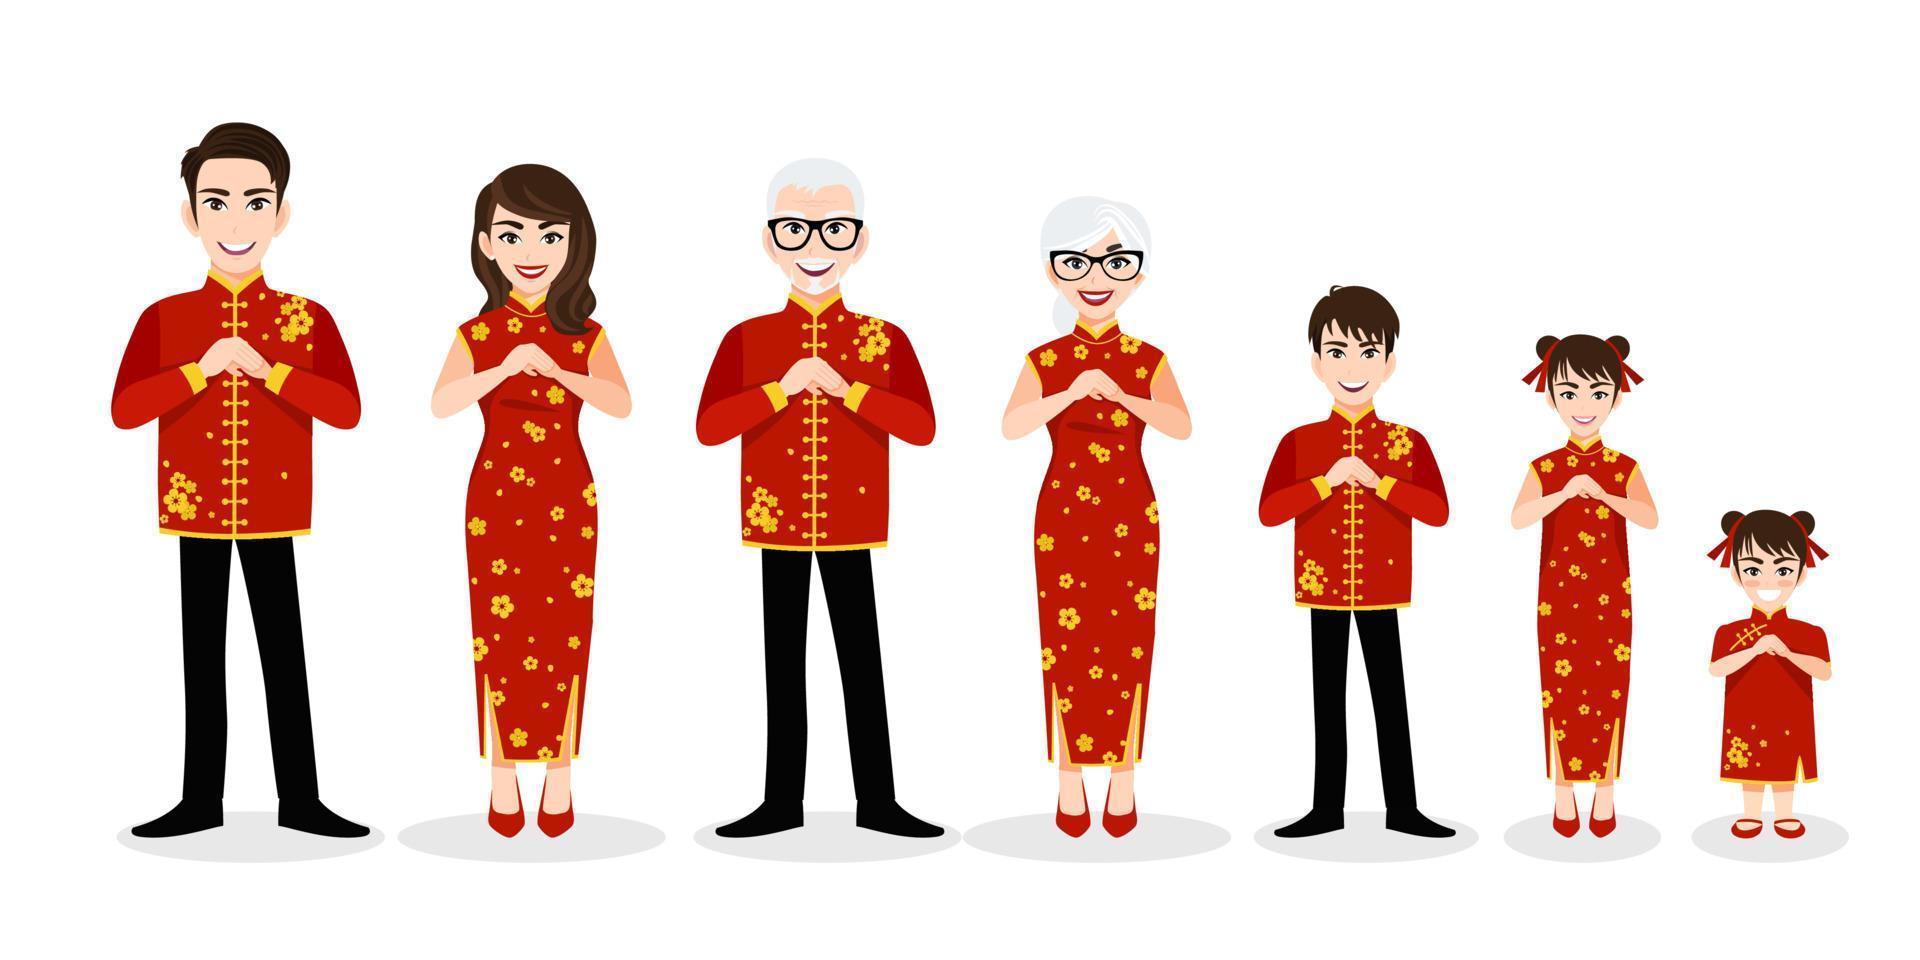 personnage de dessin animé de grande famille chinoise salutation au festival du nouvel an chinois sur le vecteur de fond blanc